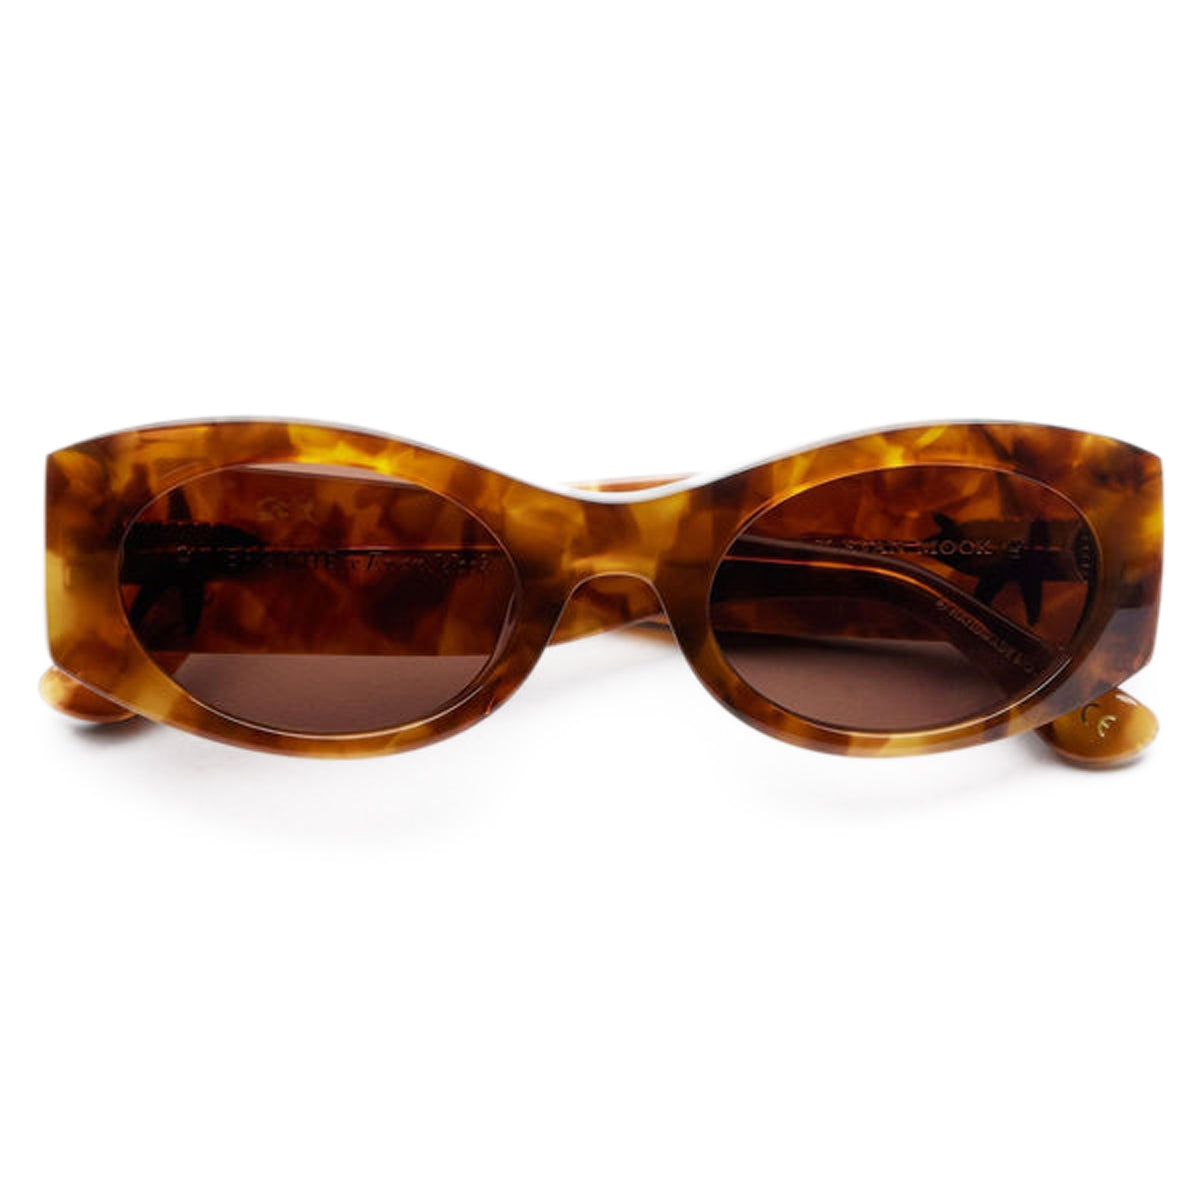 Epokhe Suede Sunglasses - Tortoise Polished/Bronze image 2